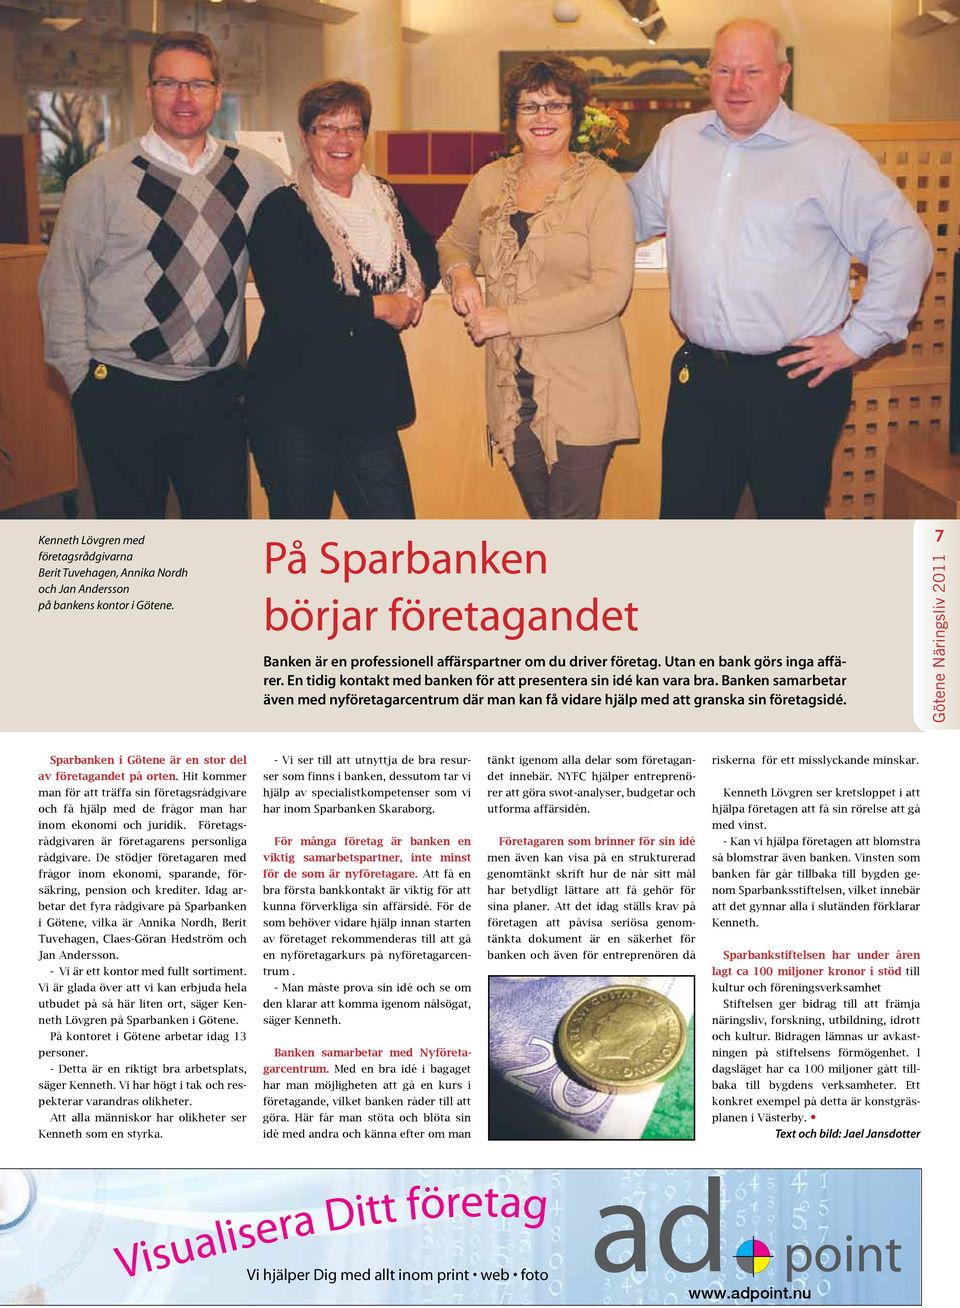 Banken samarbetar även med nyföretagarcentrum där man kan få vidare hjälp med att granska sin företagsidé. 7 Sparbanken i Götene är en stor del av företagandet på orten.